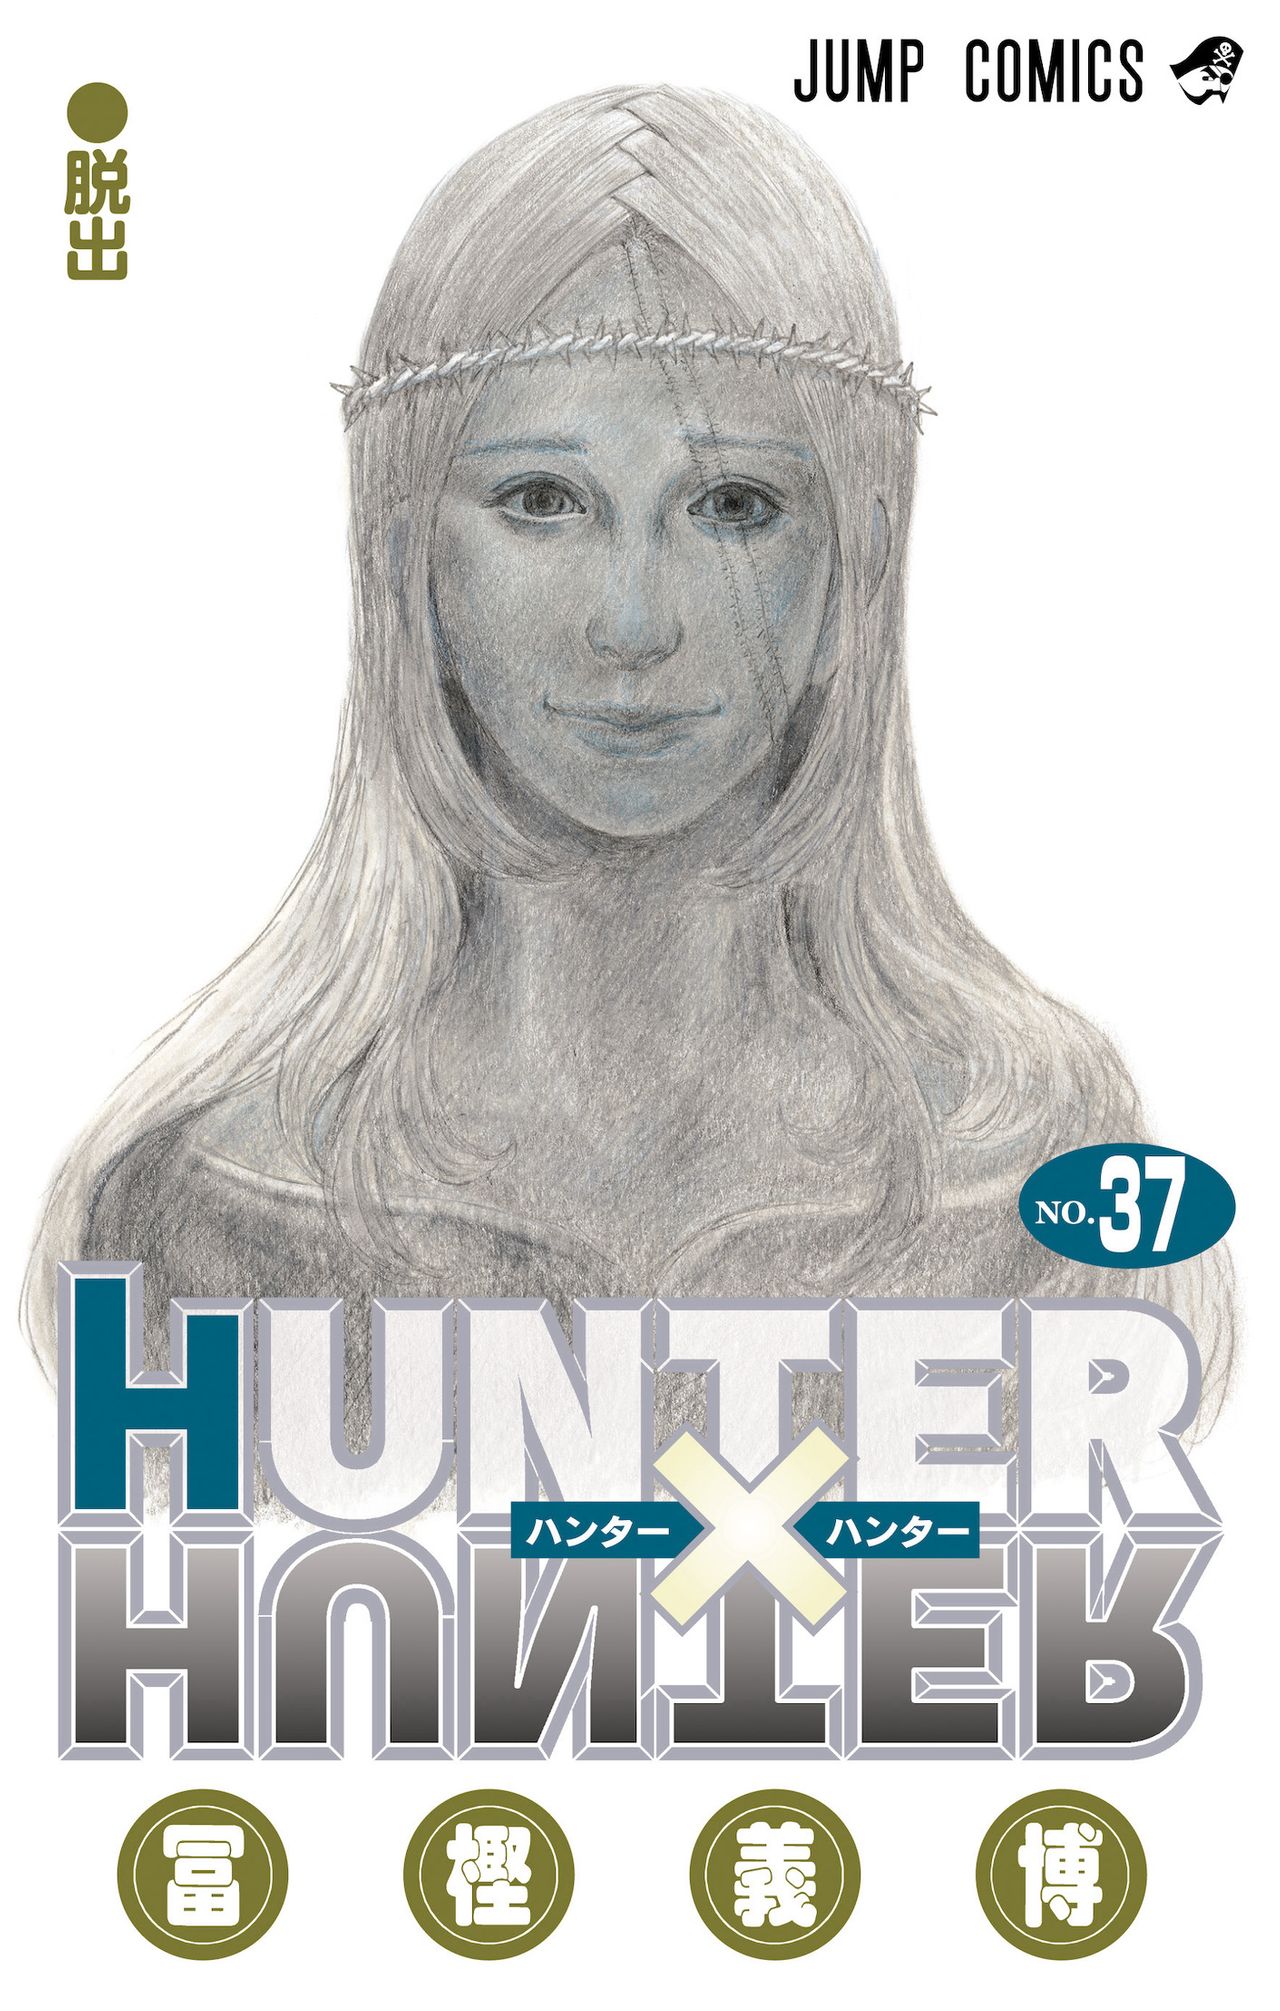 冨樫義博『HUNTER×HUNTER』 約3年11か月ぶりに連載再開へ  「これで仕事頑張れる」SNS上でファン喜び